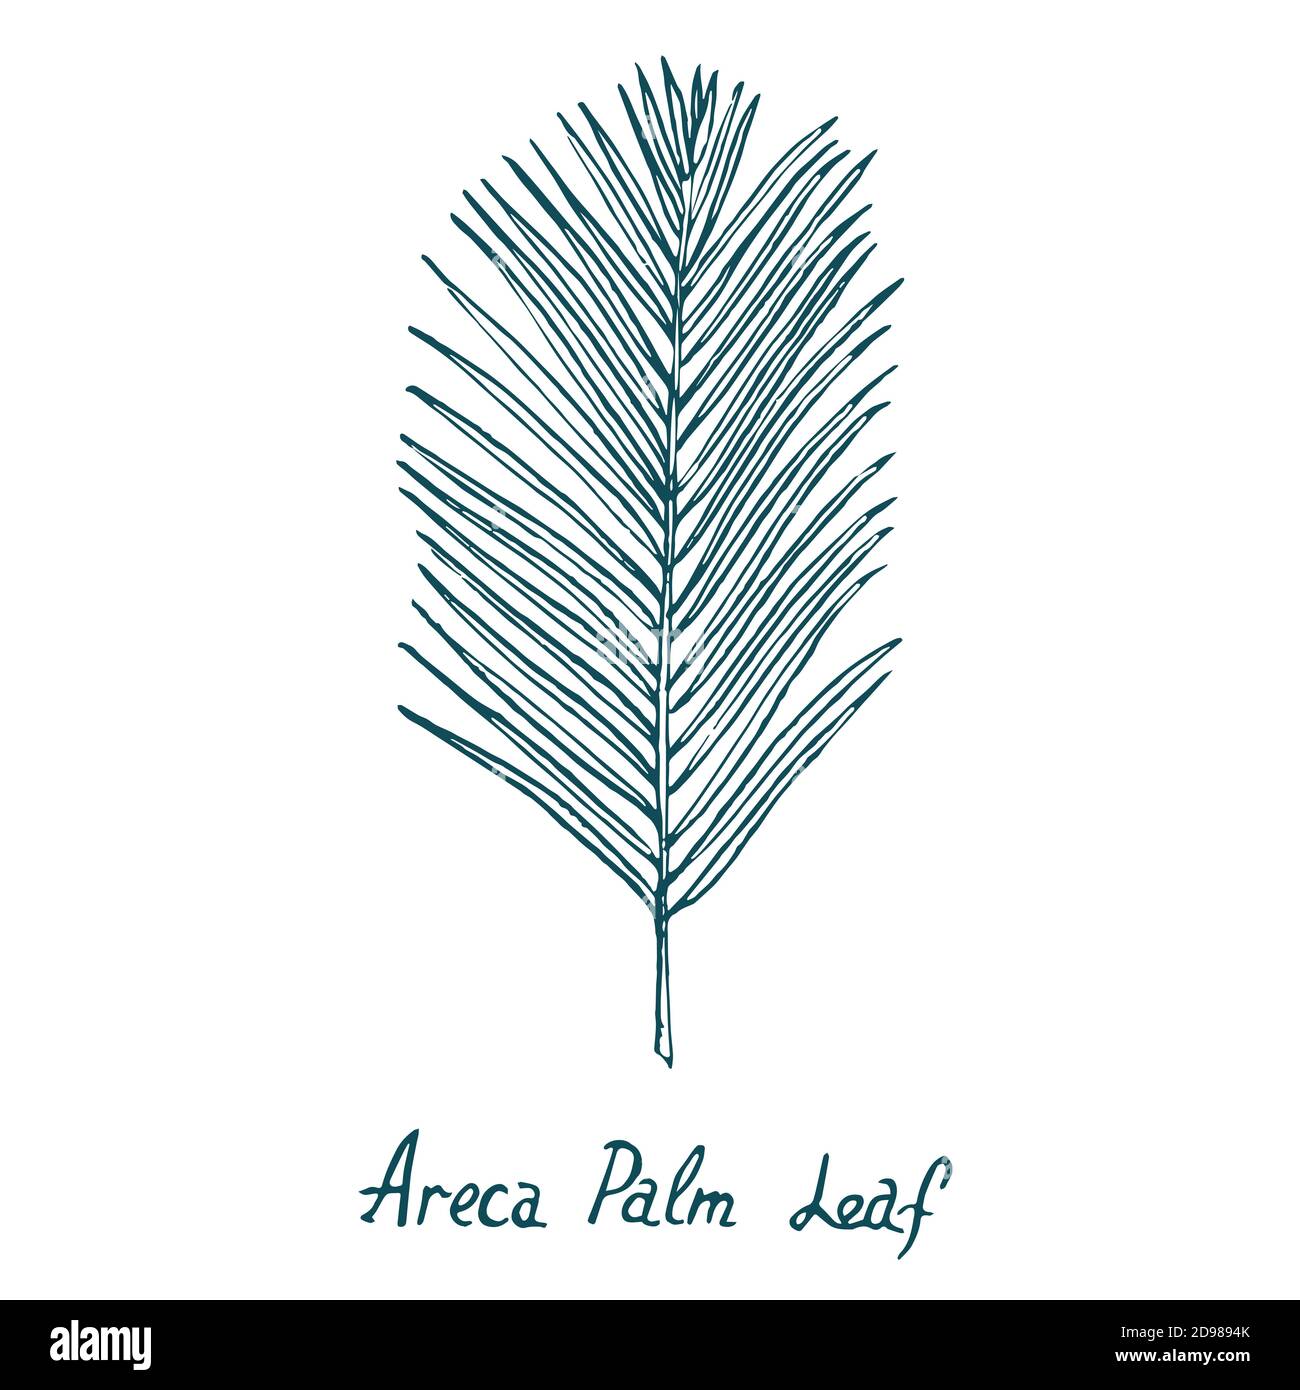 Palm Leaf Palmtrees Palmtree Freetoedit  Tropical Leaves Drawings Free HD  Png Download  vhv